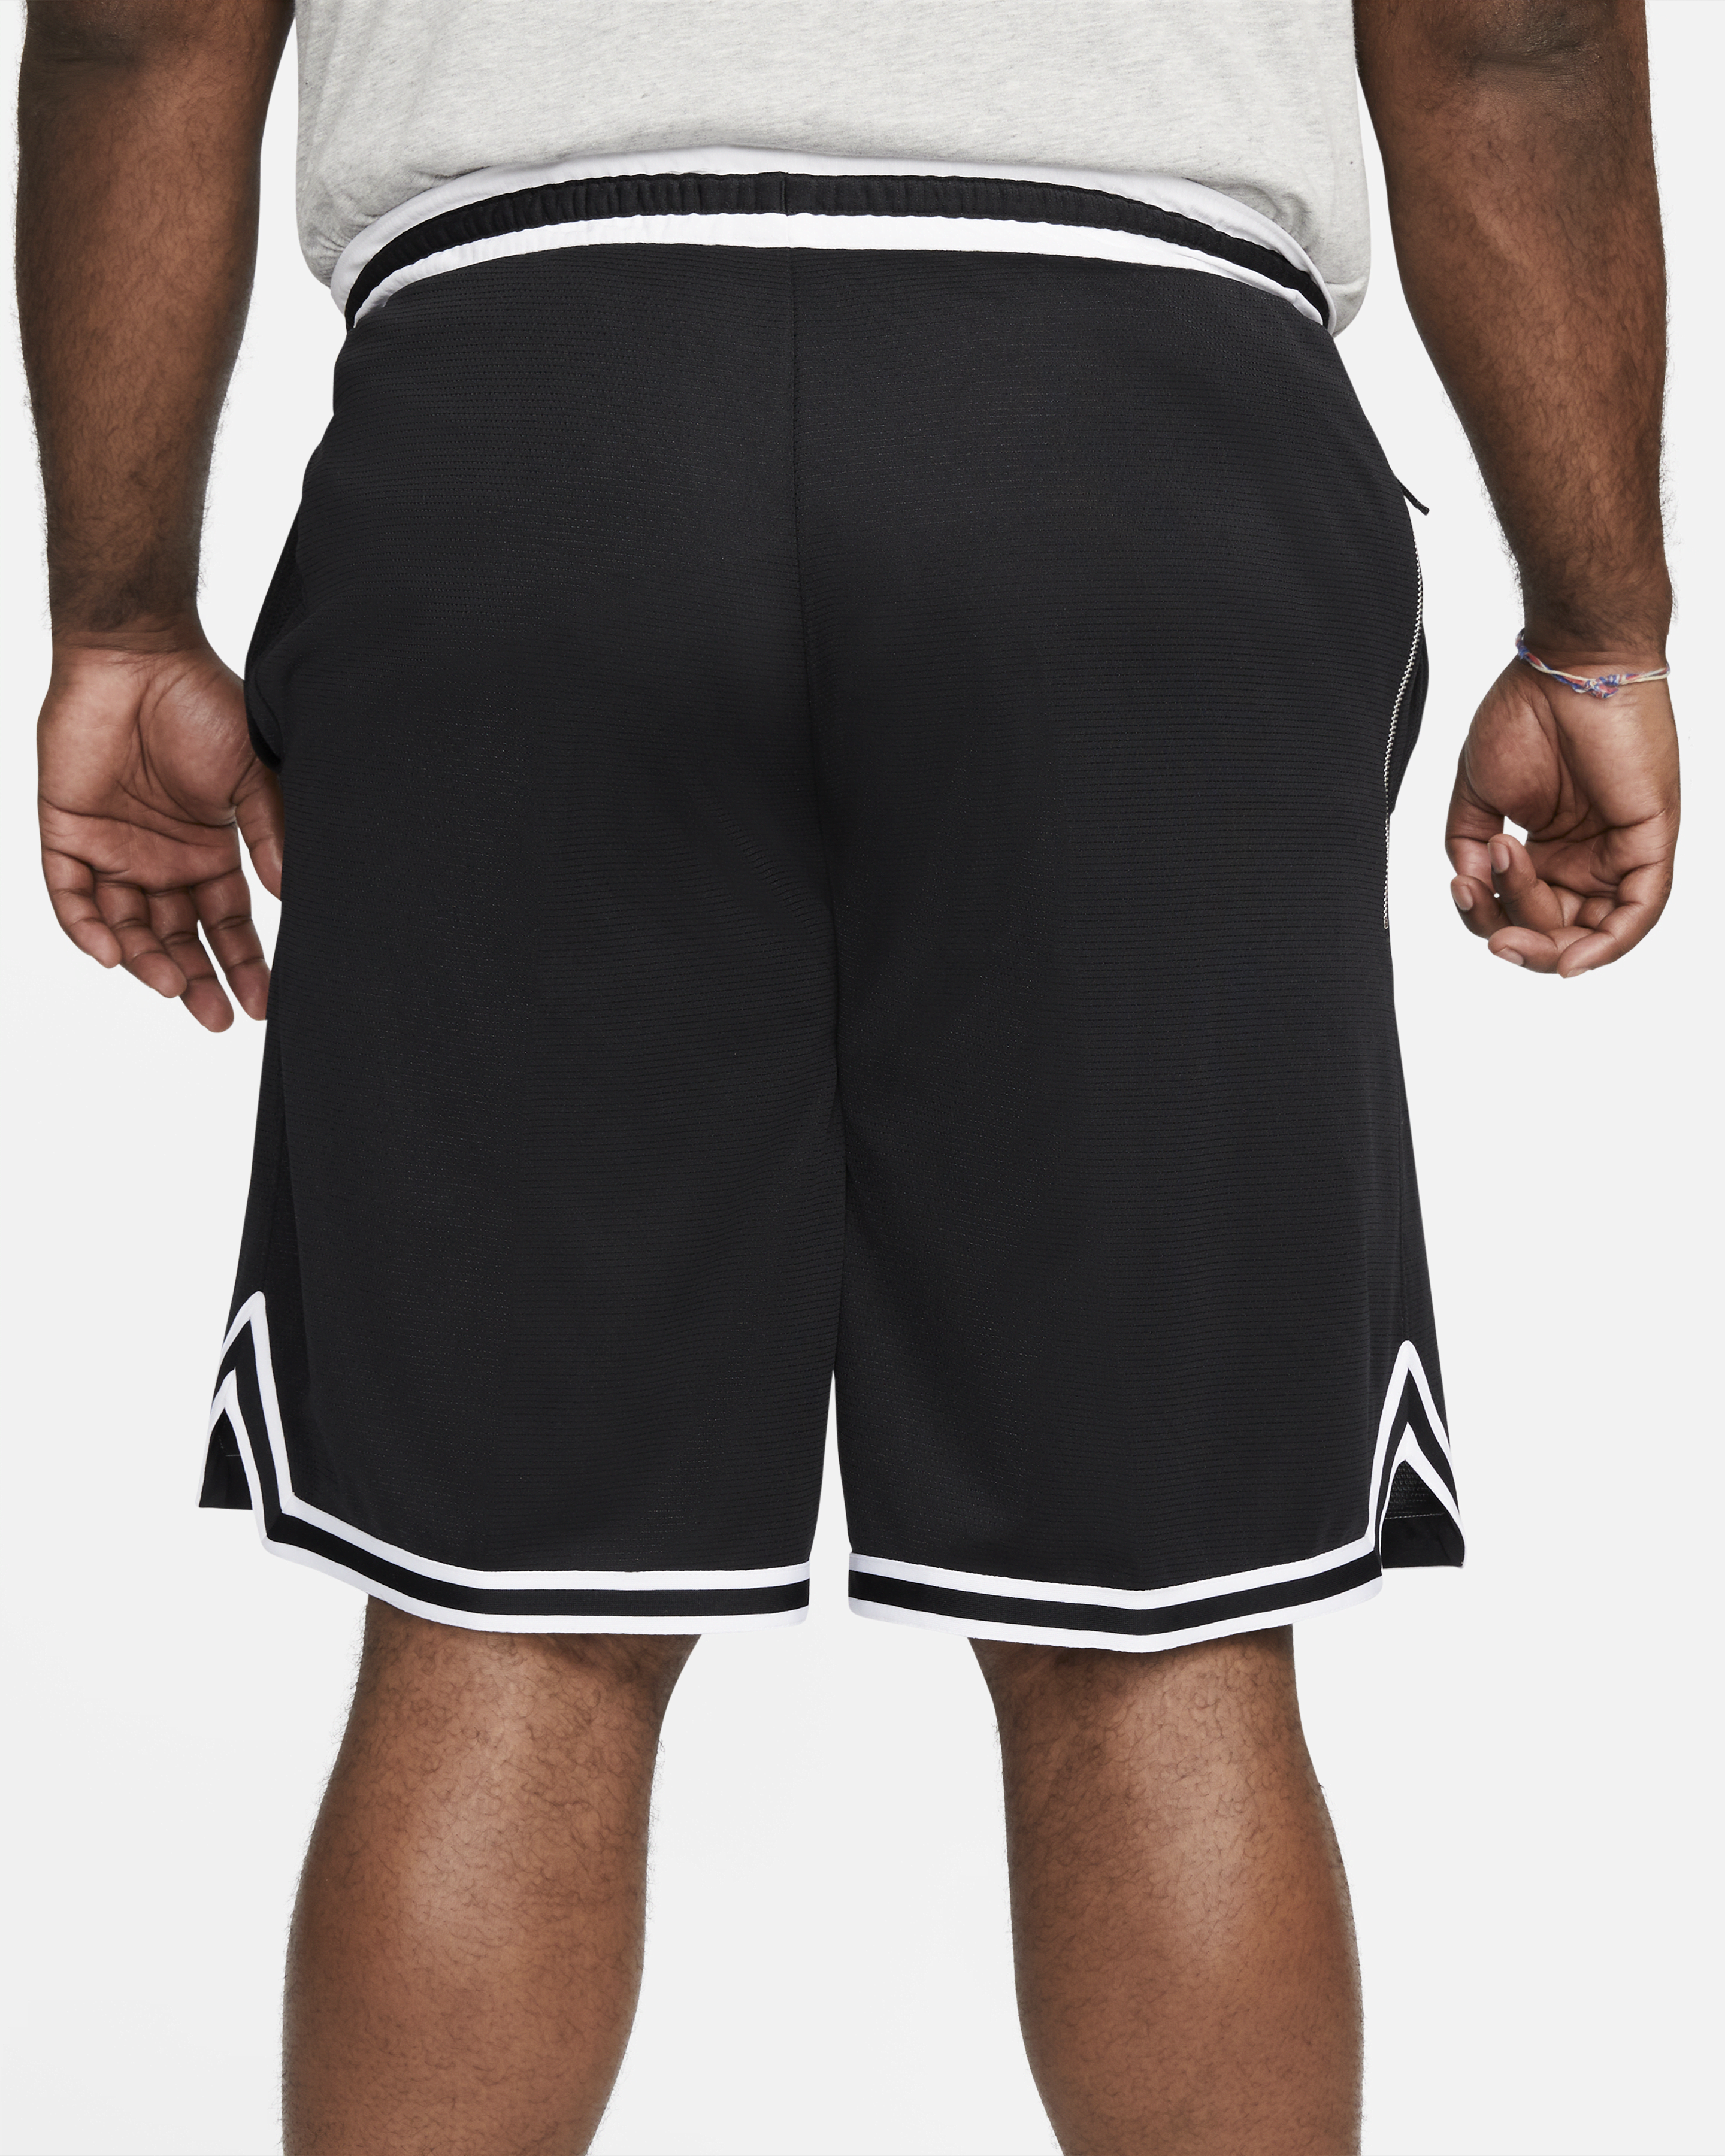 Shorts - Basketball